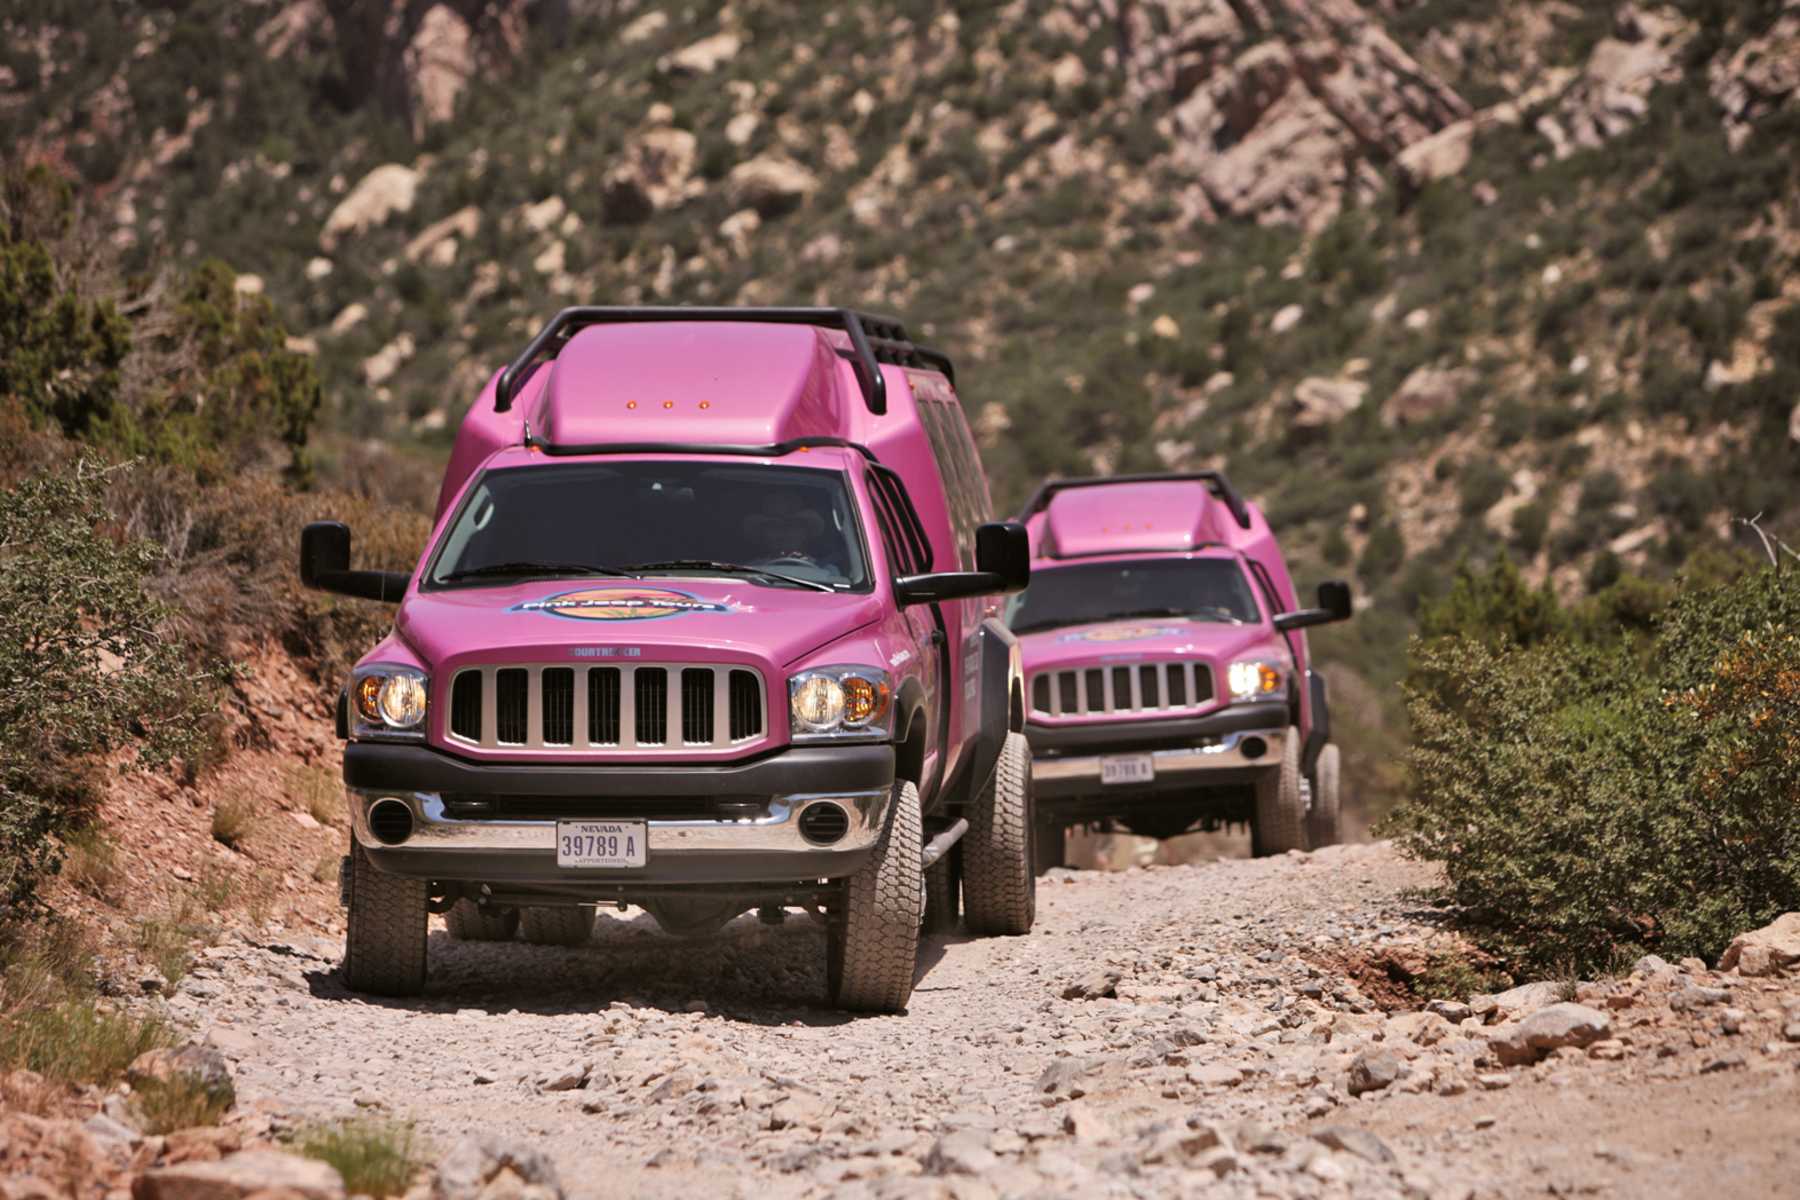 grand canyon jeep tours